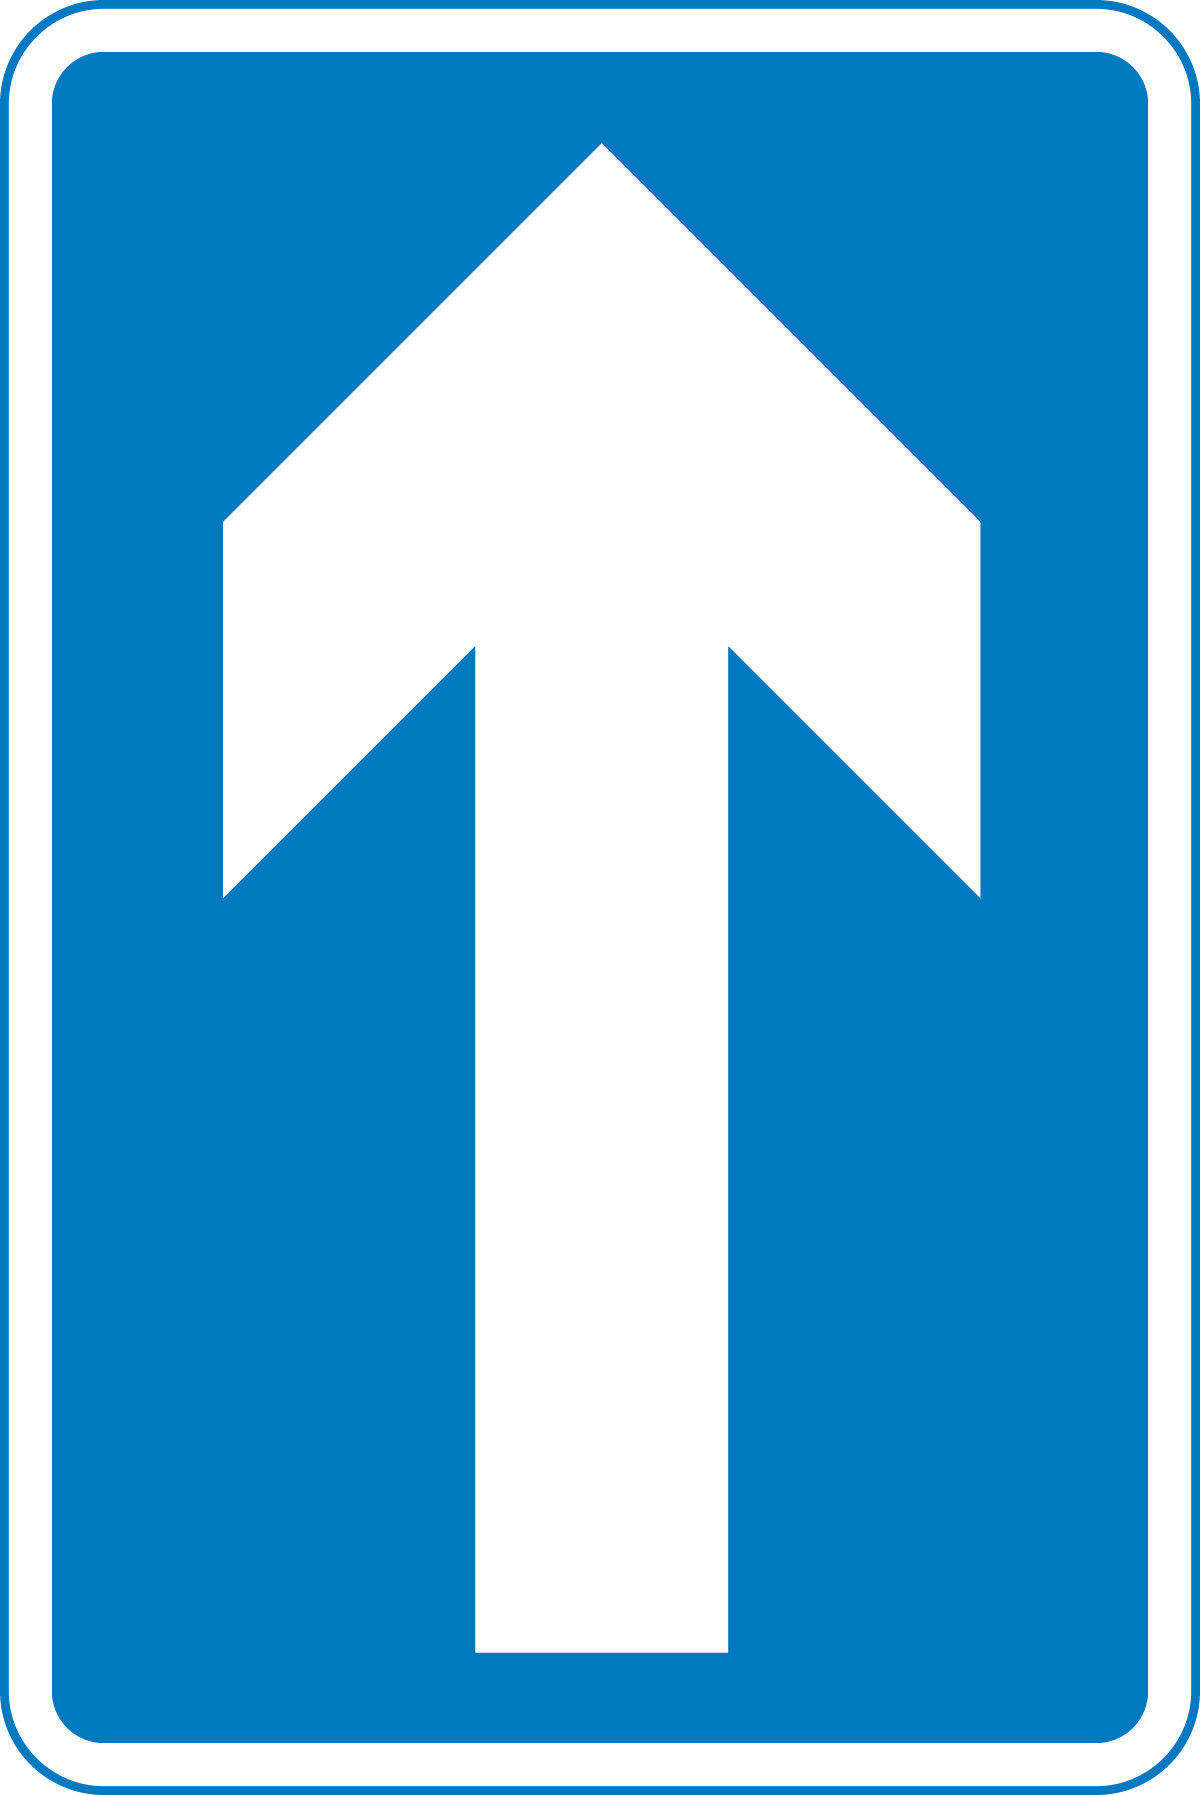 One-way traffic - Wikipedia